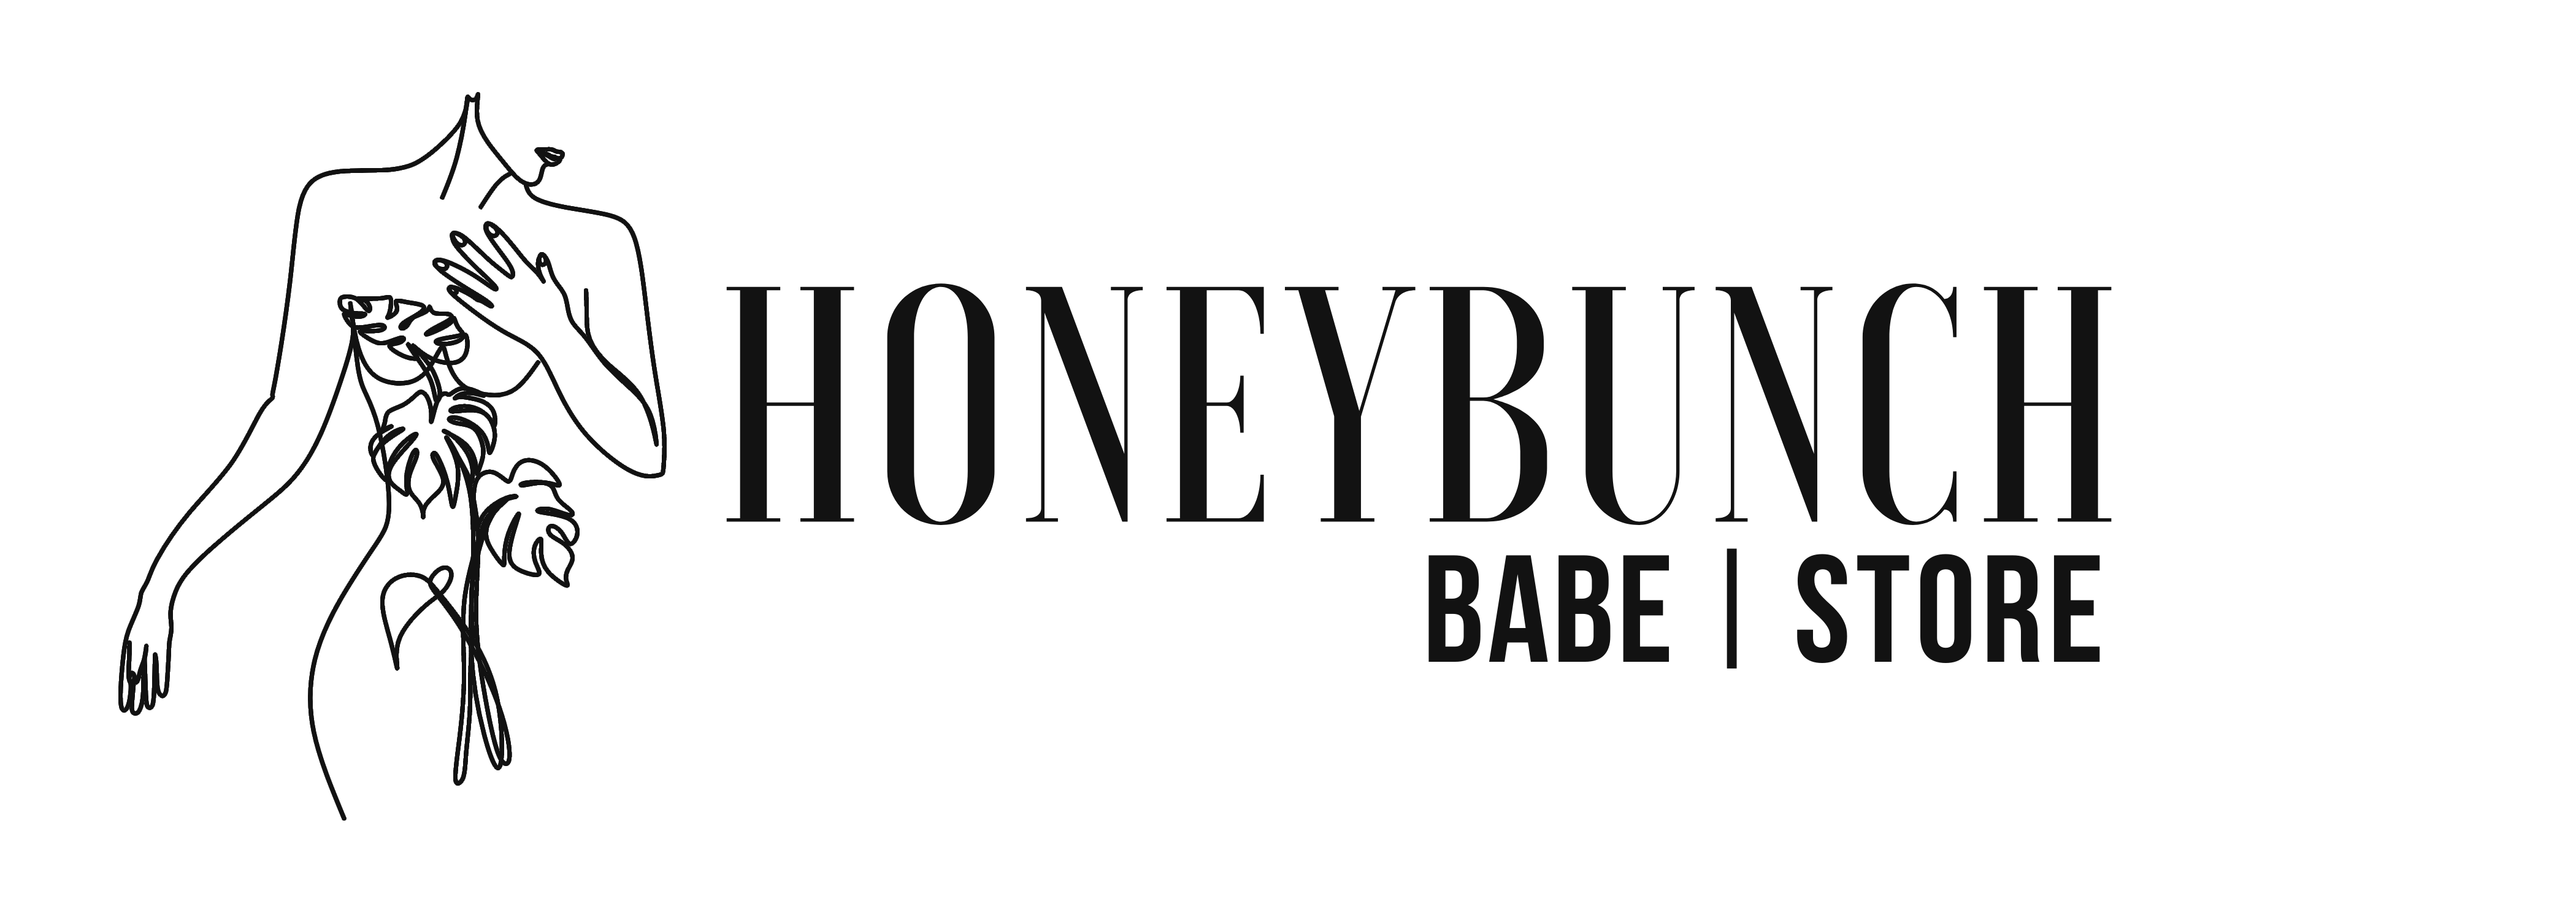 Honeybunch.store – Honeybunch_babe